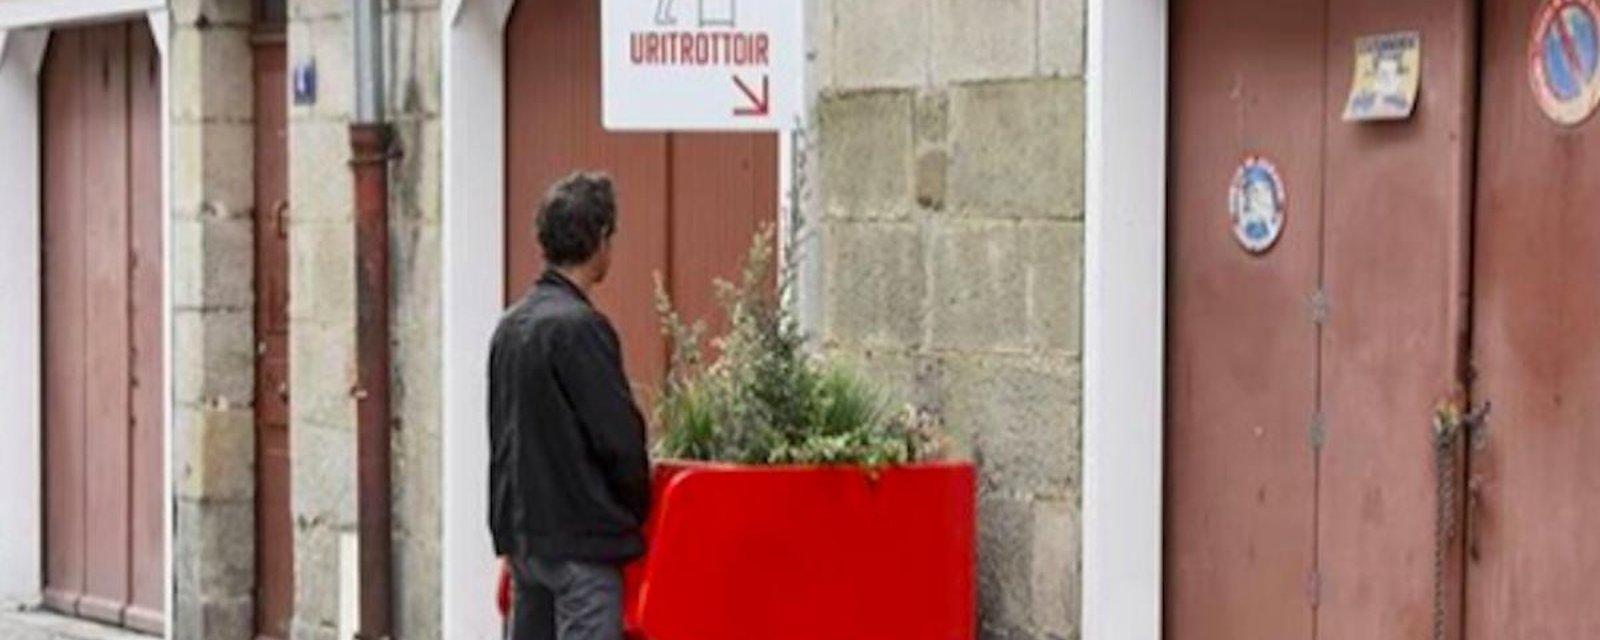 Bientôt dans les rues de Toulouse: des urinoirs écologiques et fleuris